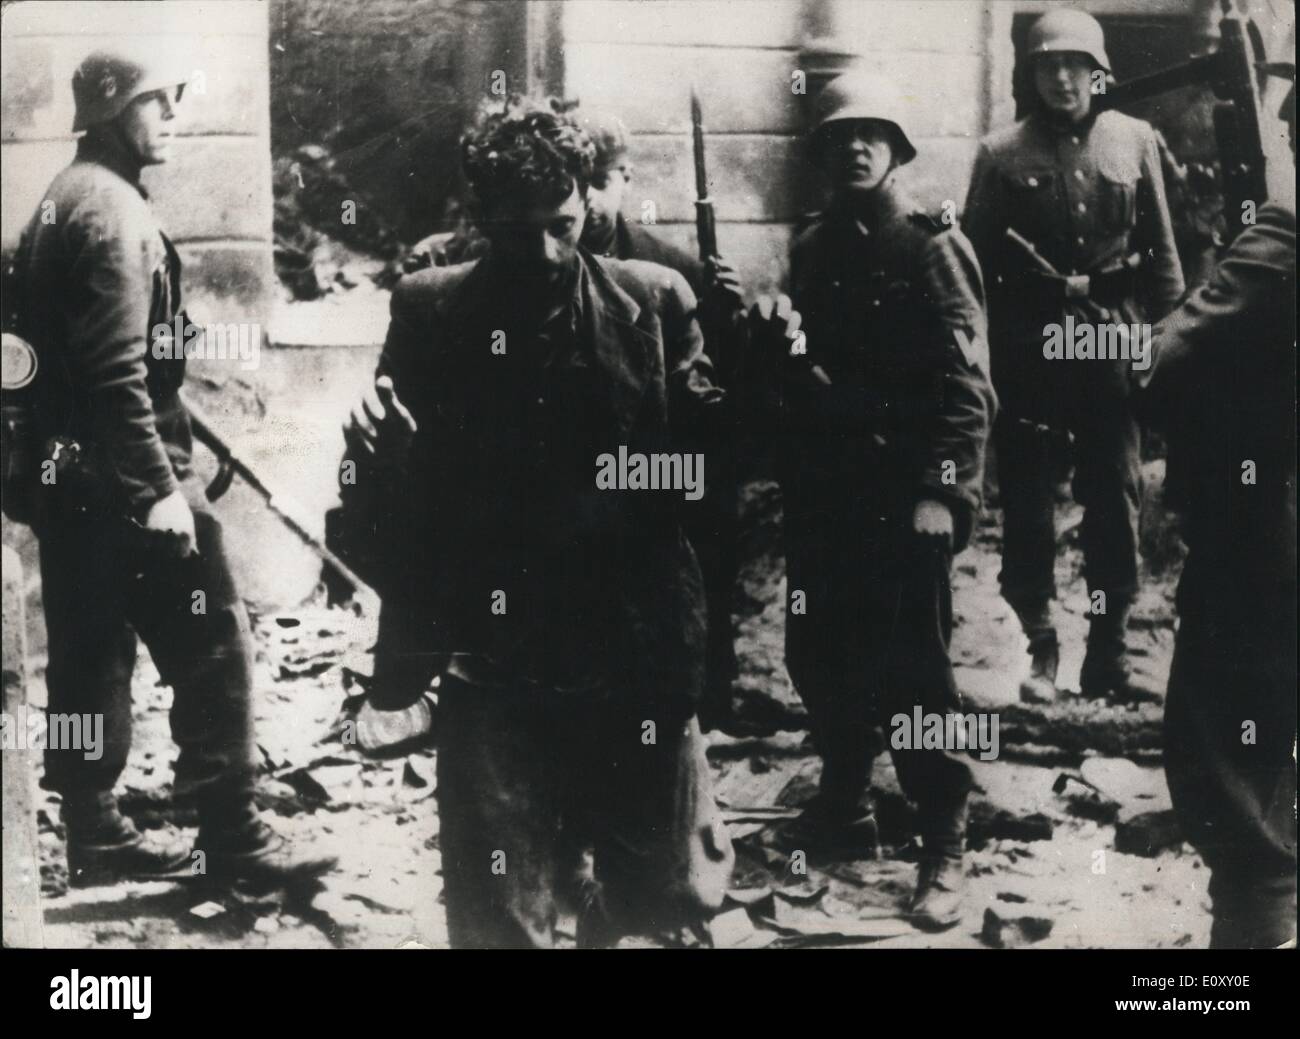 4. April 1968 - 25.. Jahrestag des jüdischen Aufstand gegen die deutsche Armee In Polen: am 19. April 1943 stieg gegen die deutsche Armee israelische Organisationen des Warschauer Ghettos. Foto zeigt zwei jüdische Häftlinge, die an den steigenden teilgenommen - scheinen mit einer Gruppe von deutschen Soldaten im Warschauer Ghetto. Stockfoto